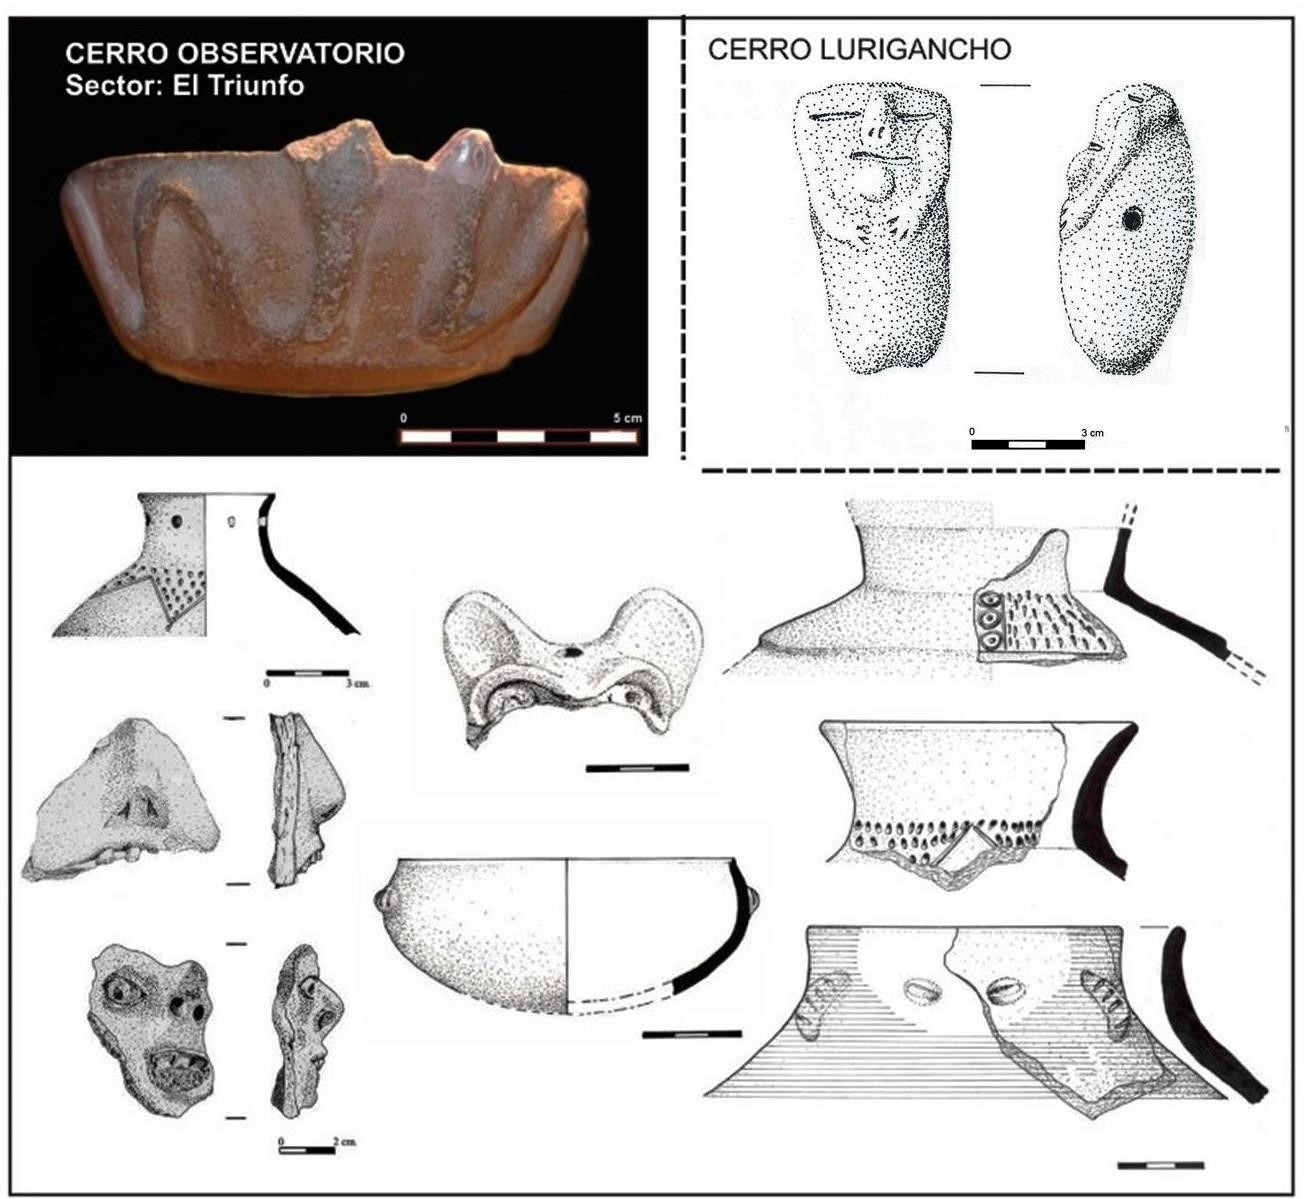 Diversos fragmentos de cerámica provenientes de El Triunfo y figurina de Cerro Lurigancho